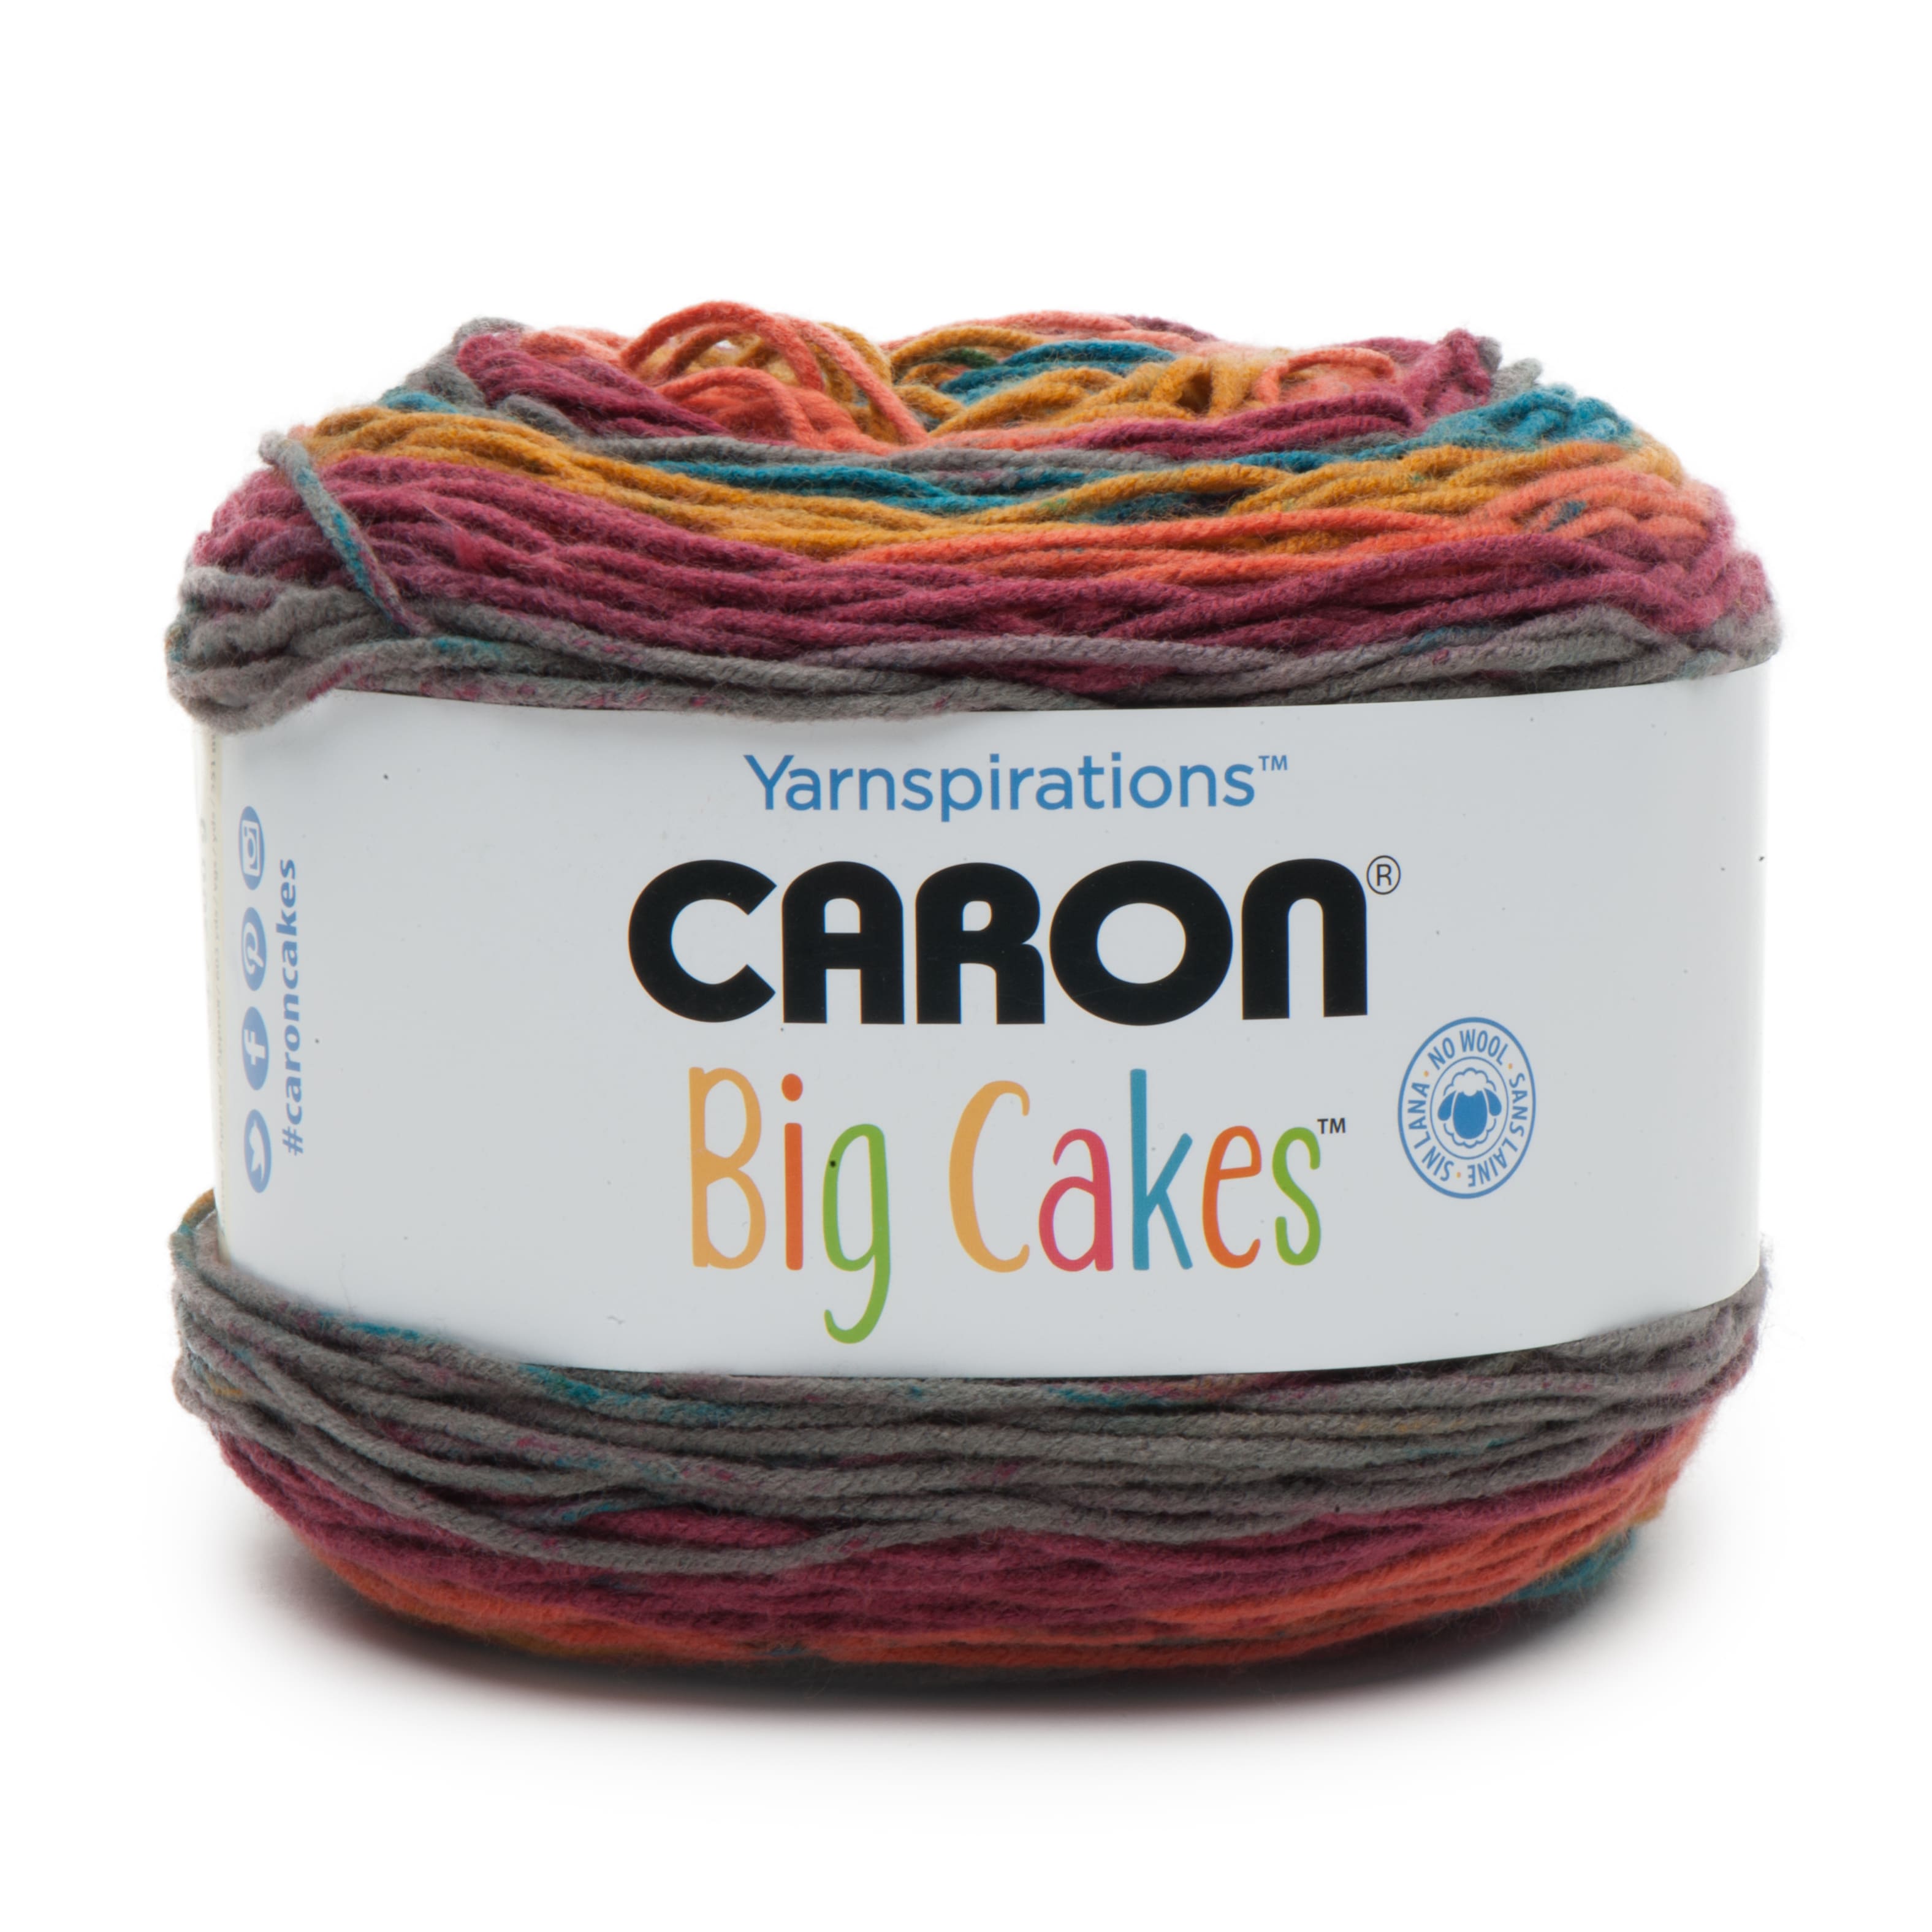 Caron® Chunky Cakes™ Yarn in Galaxy Macarons, 9.8